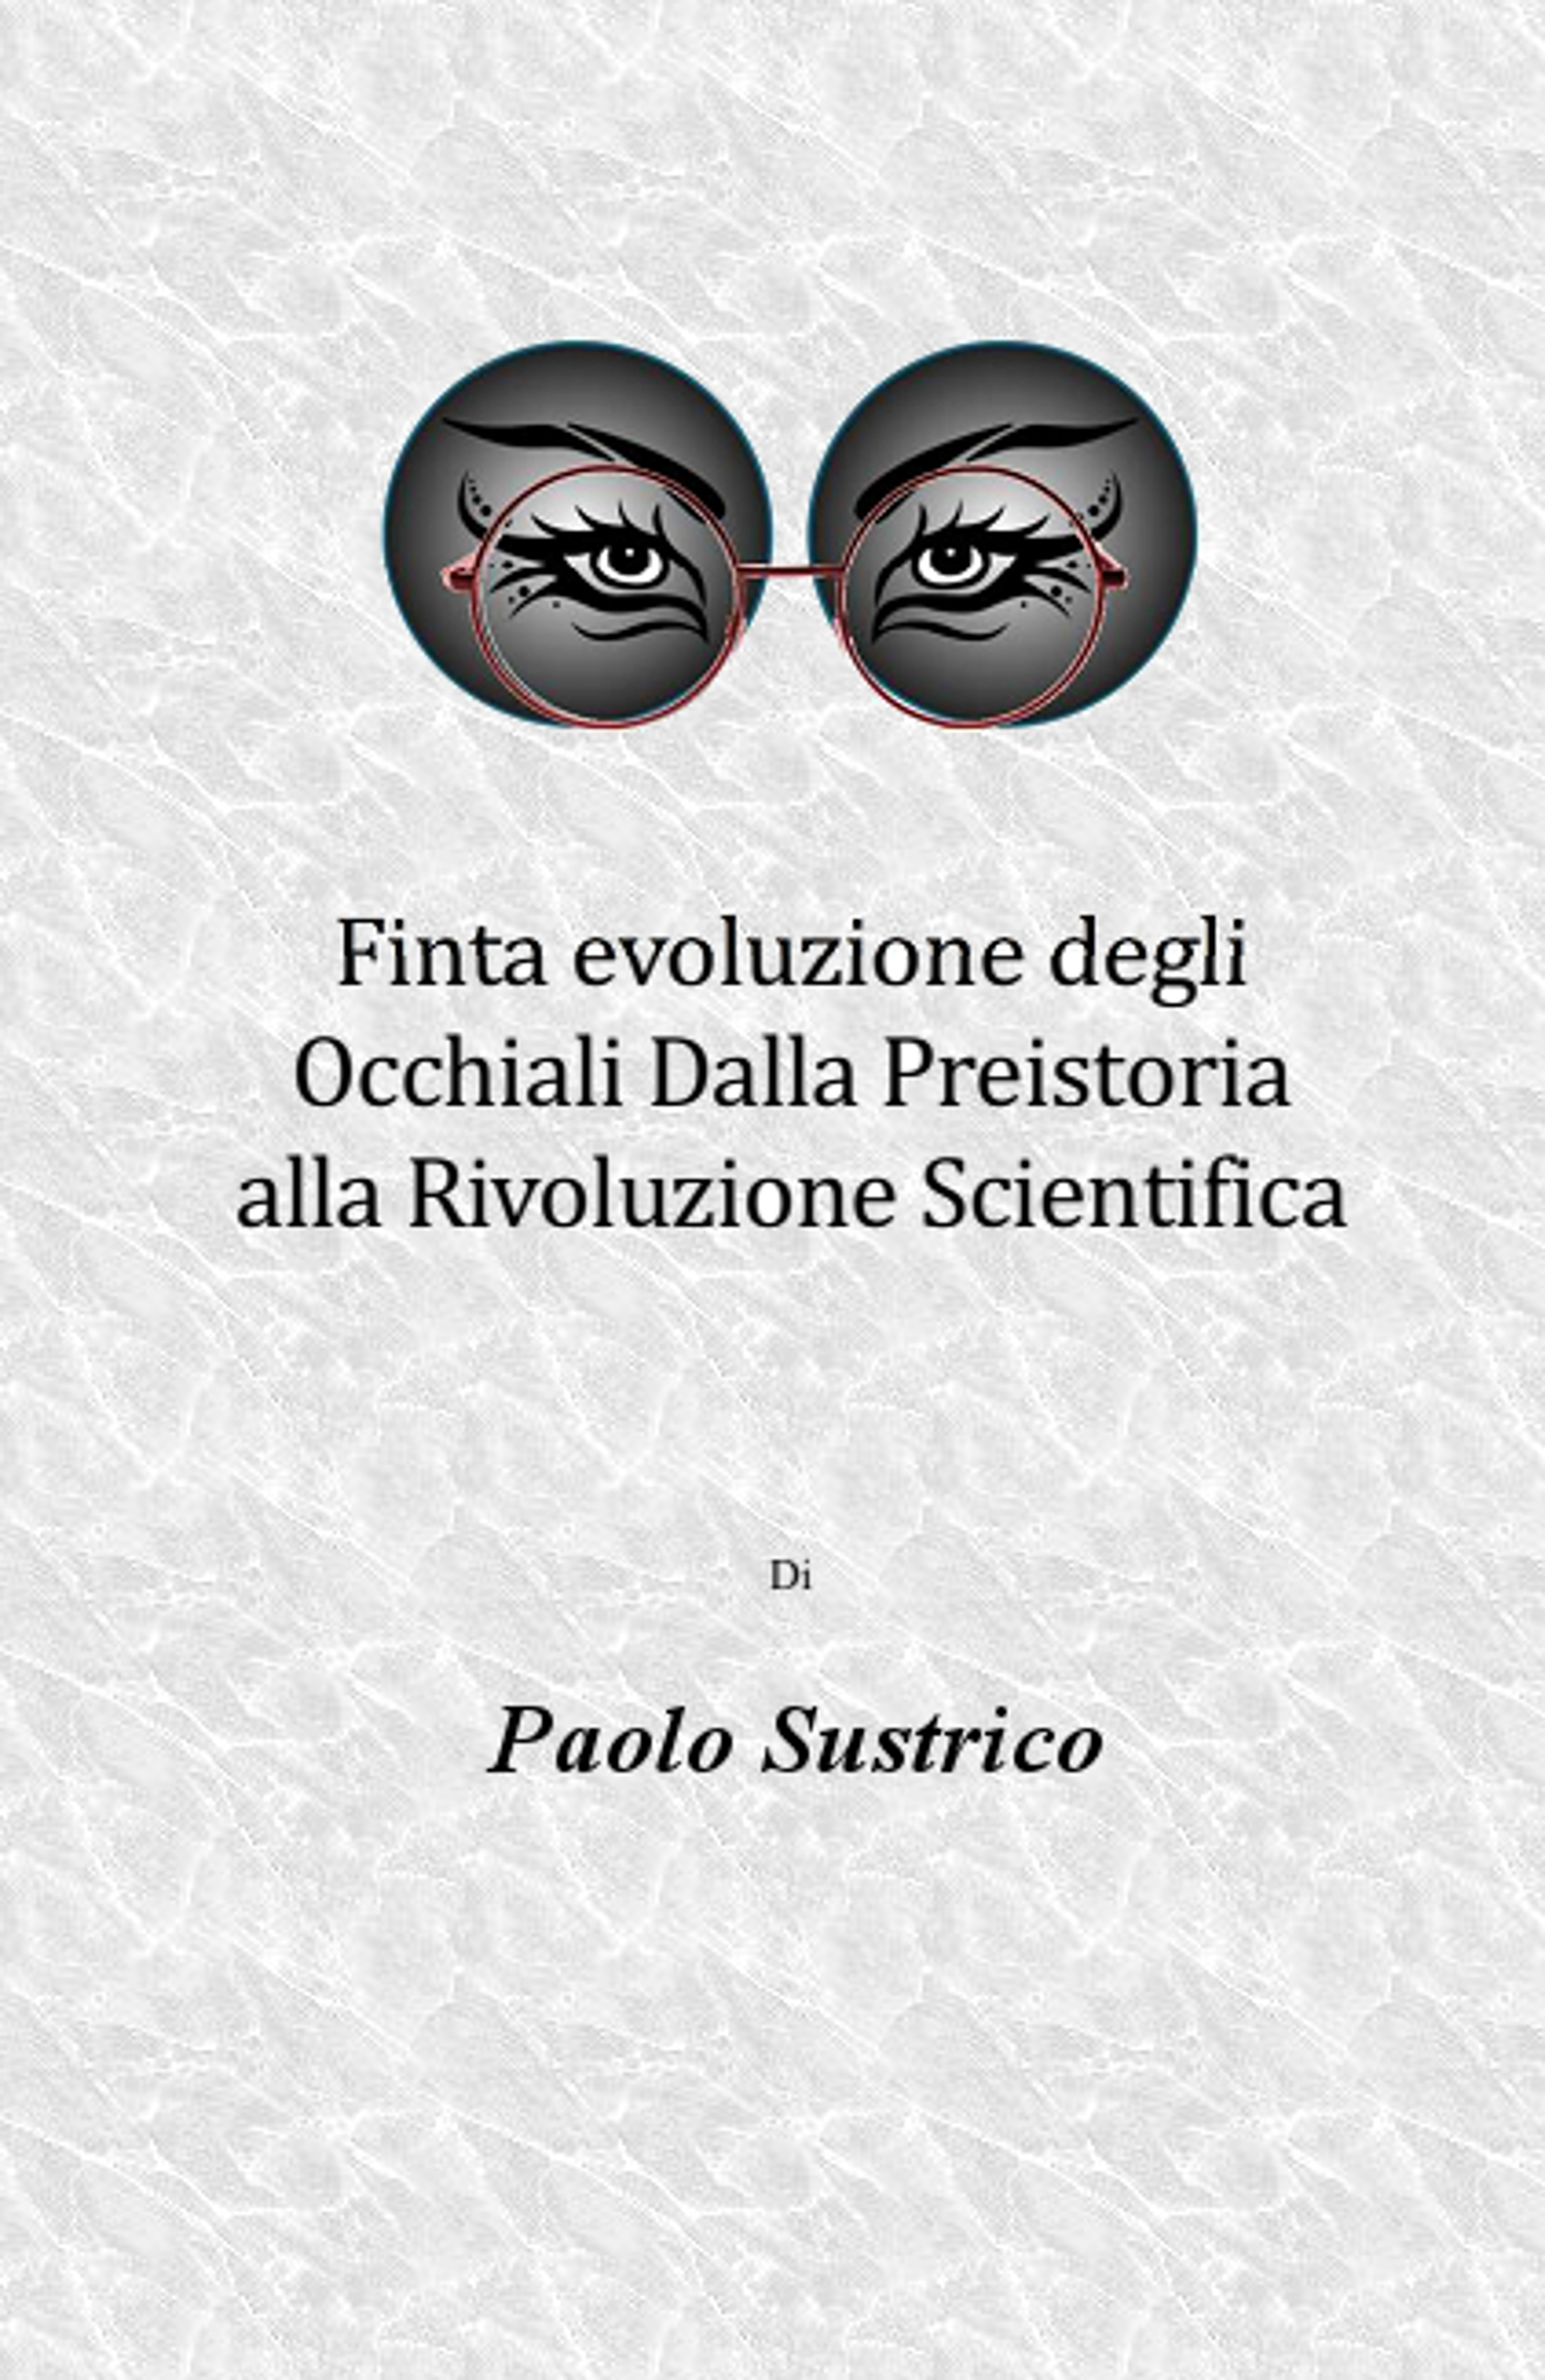 Finta evoluzione degli Occhiali Dalla Preistoria alla Rivoluzione Scientifica (2015)